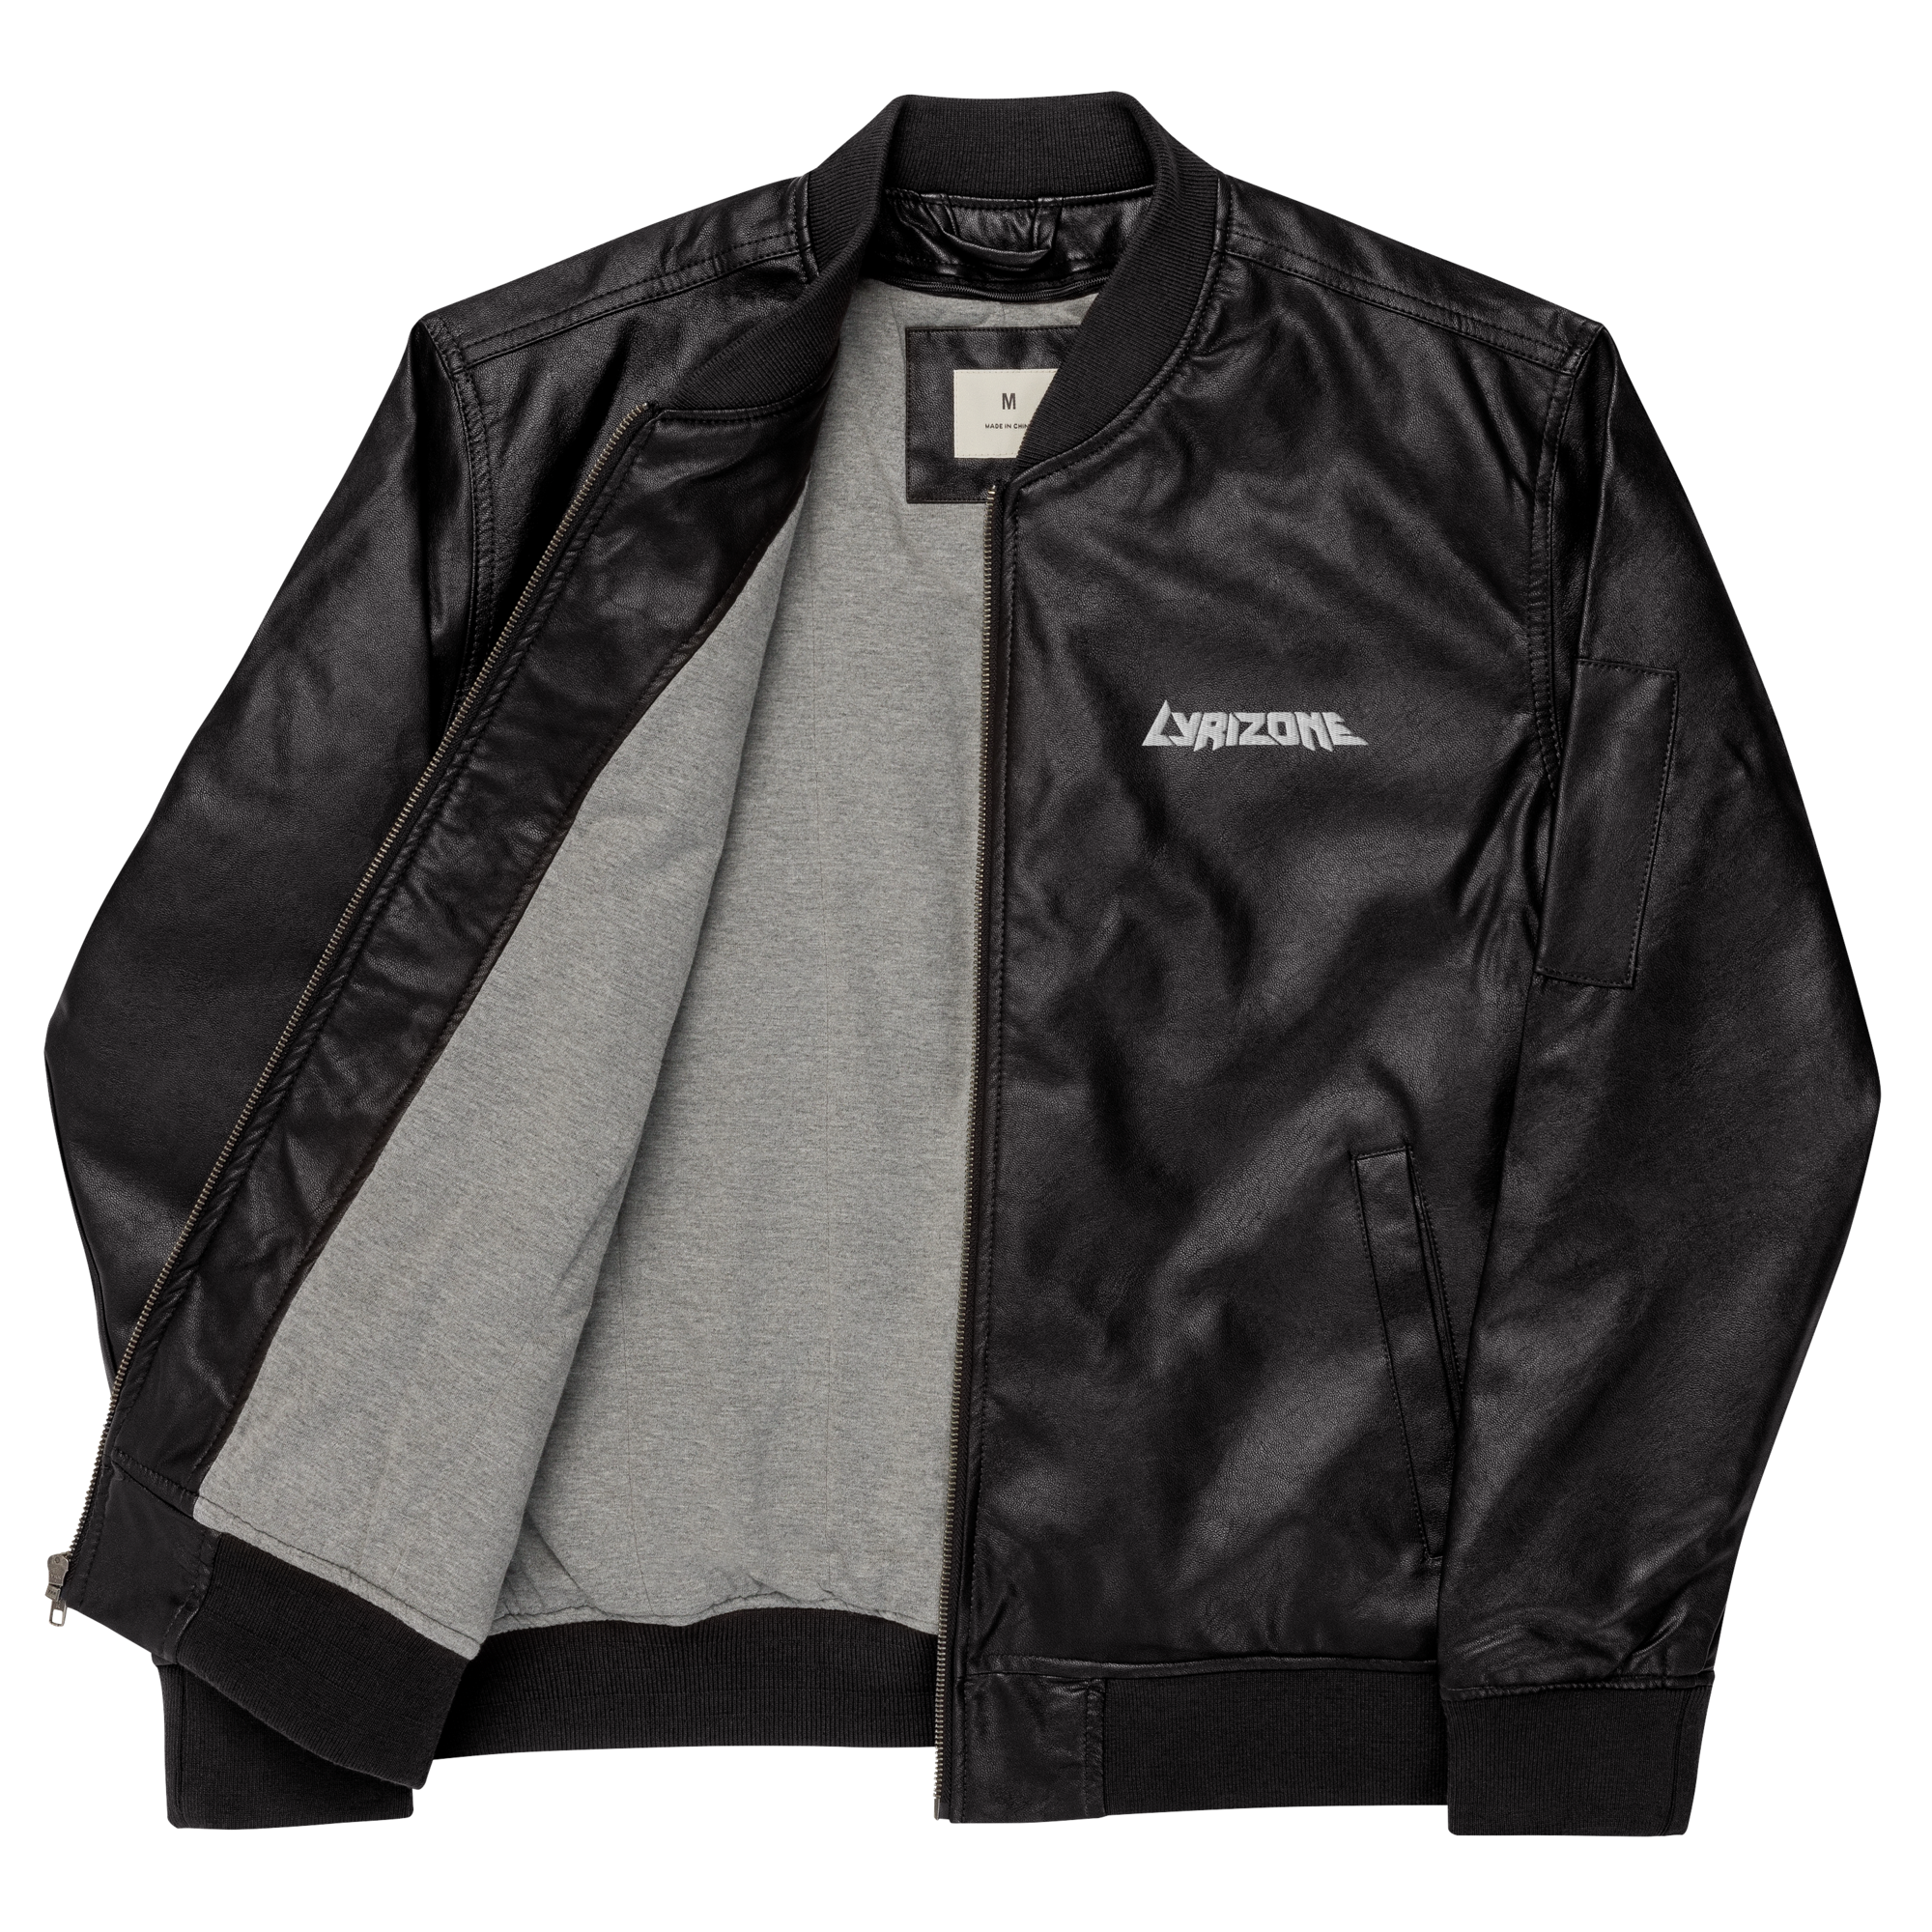 Lyrizone (Leather Bomber Jacket) Lyrizone